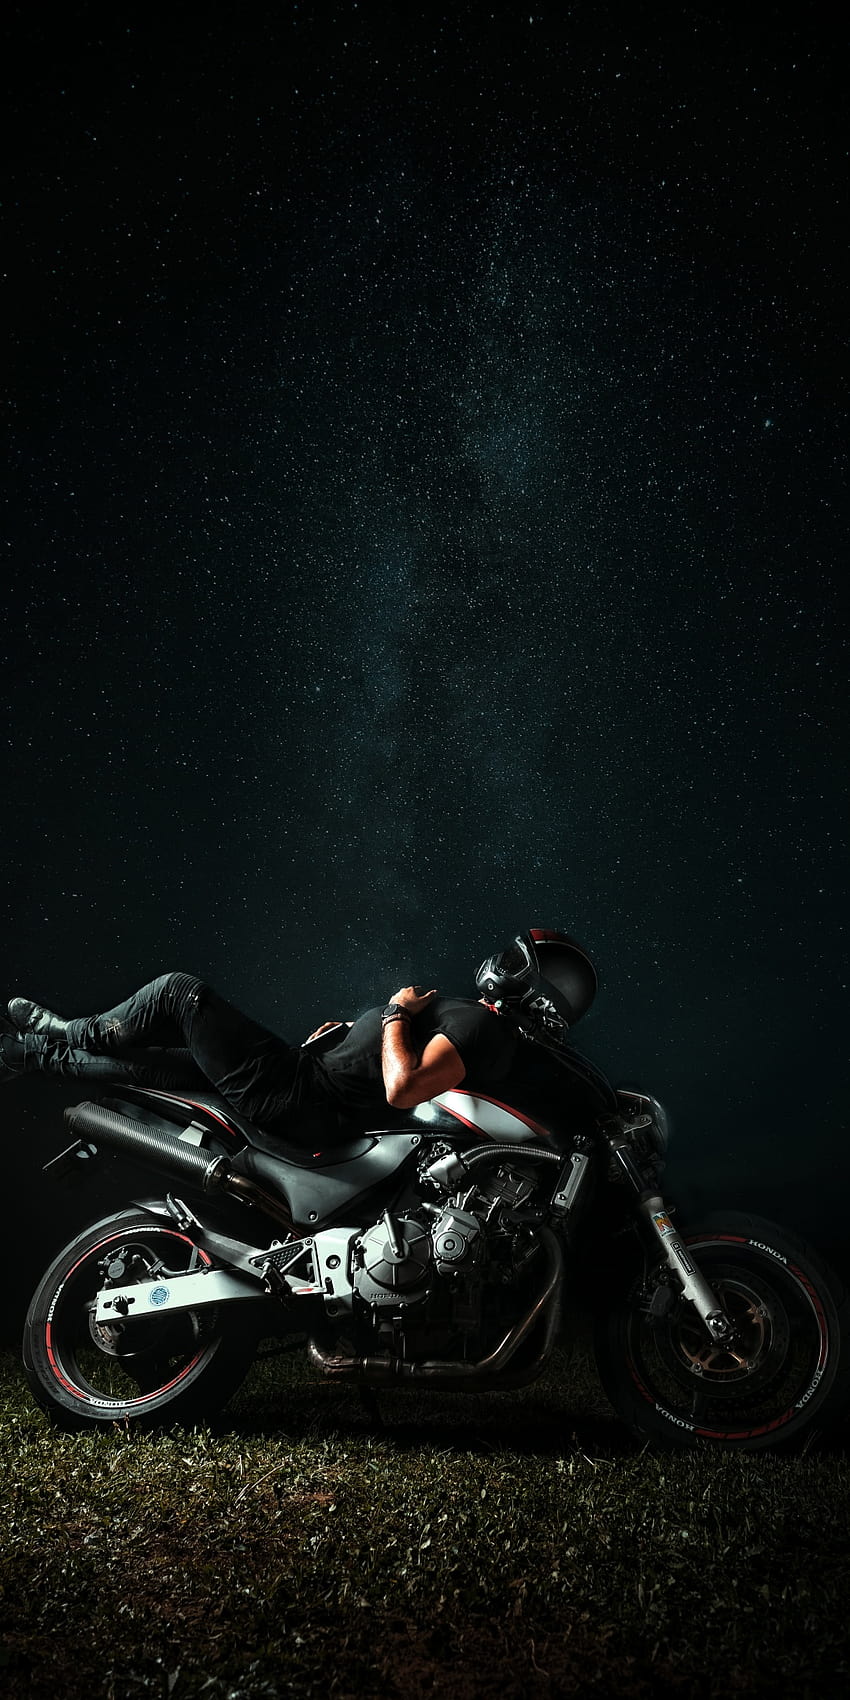 Motociclista, Noite, Céu estrelado, Honda, Relax, grafia, bicicleta noturna Papel de parede de celular HD